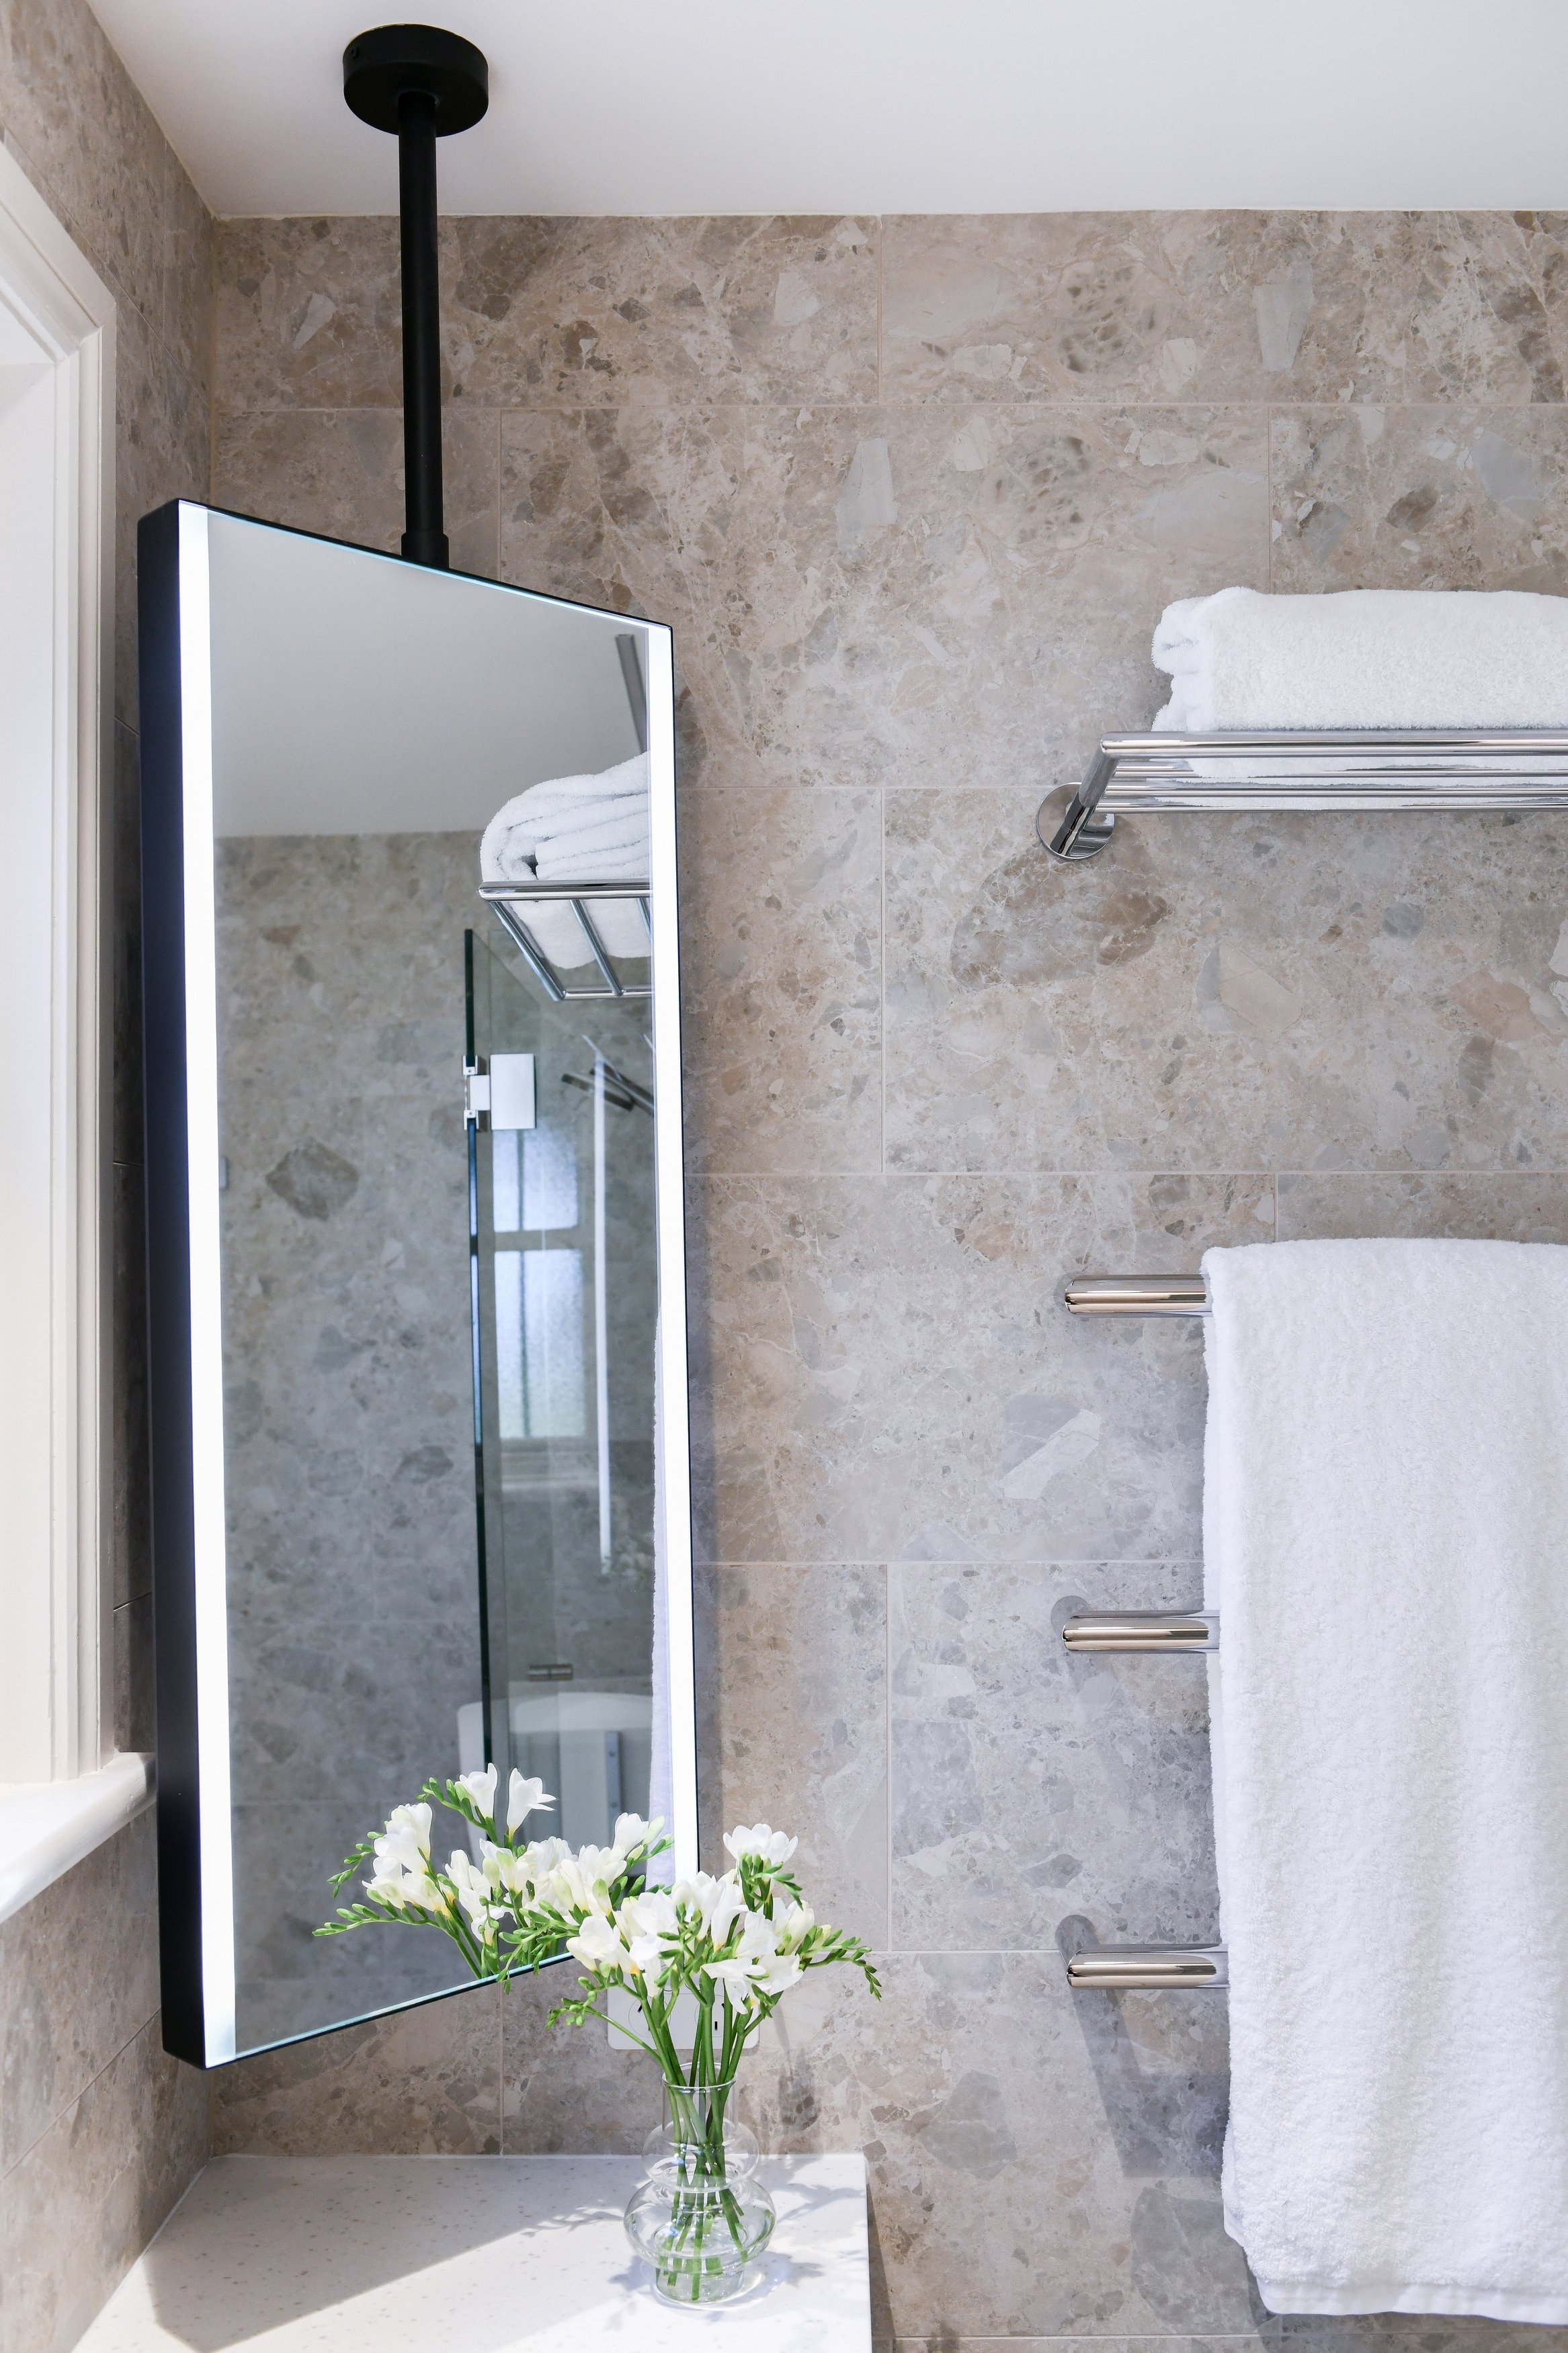 sydney_bathroom_lighted_mirror_heated_towel_rail